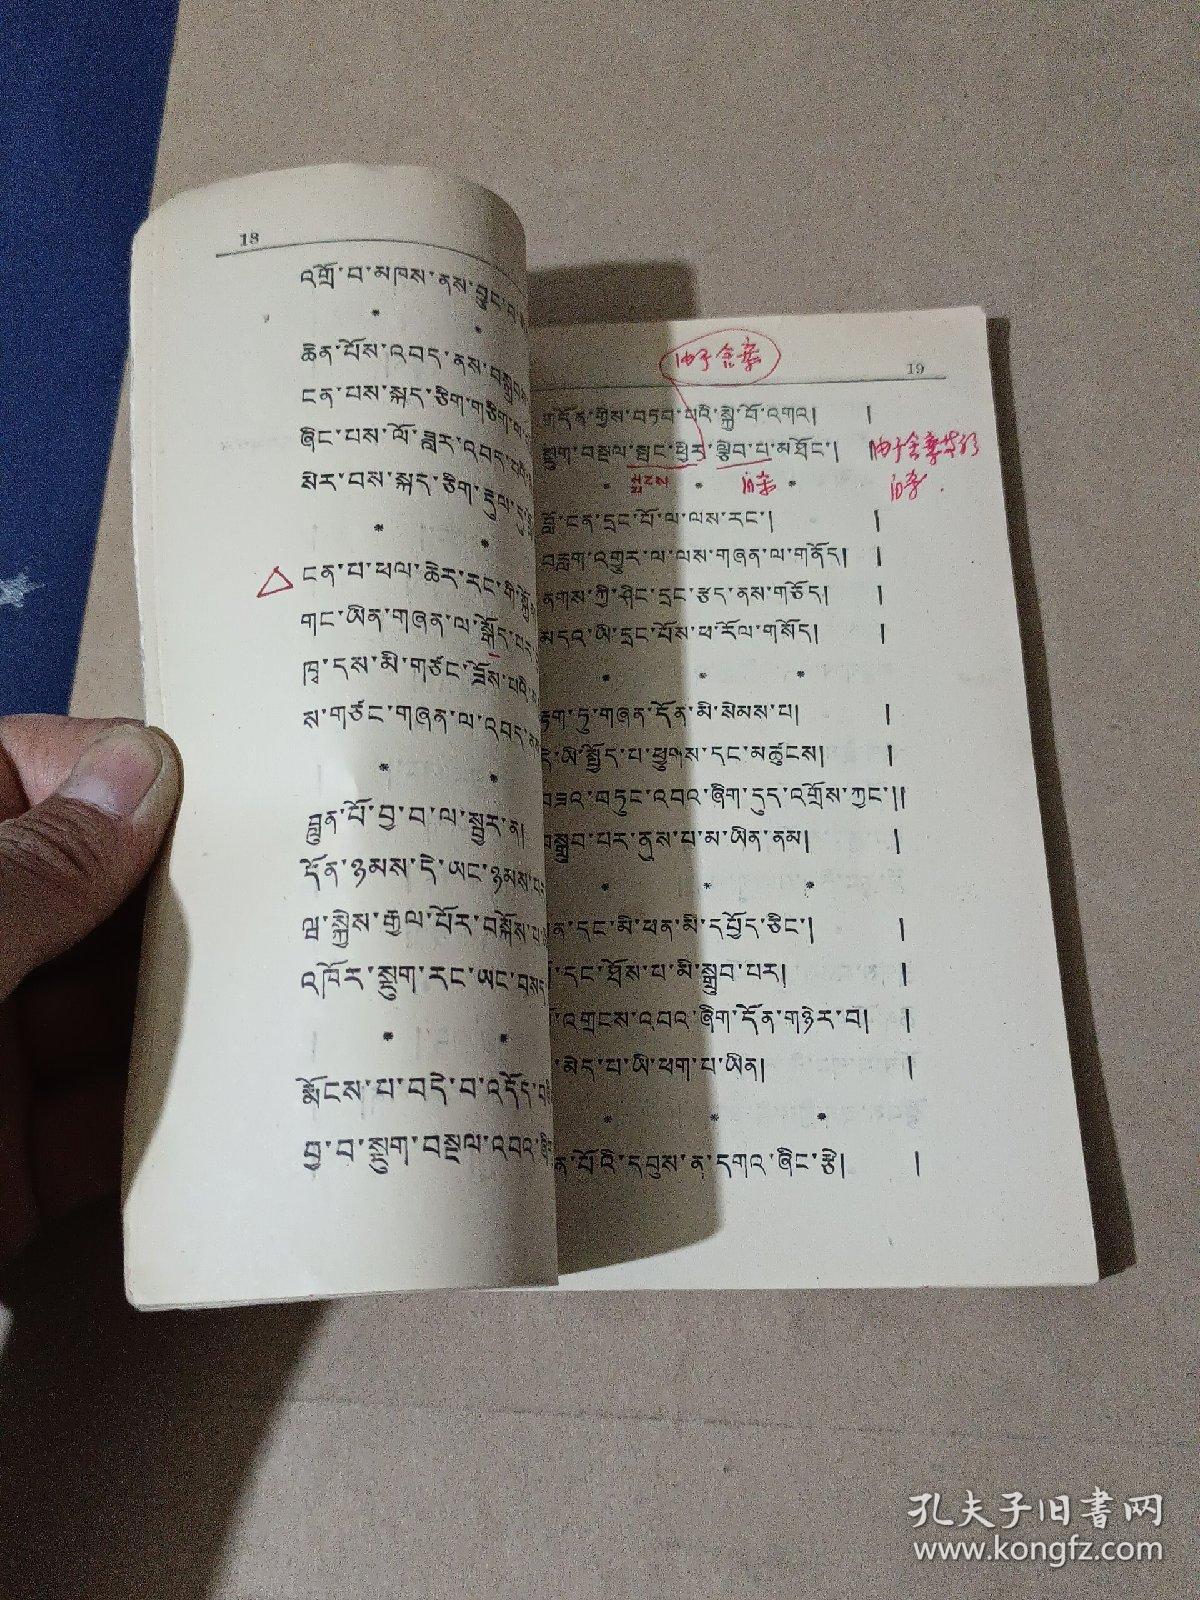 萨迦格言全文 藏汉文图片